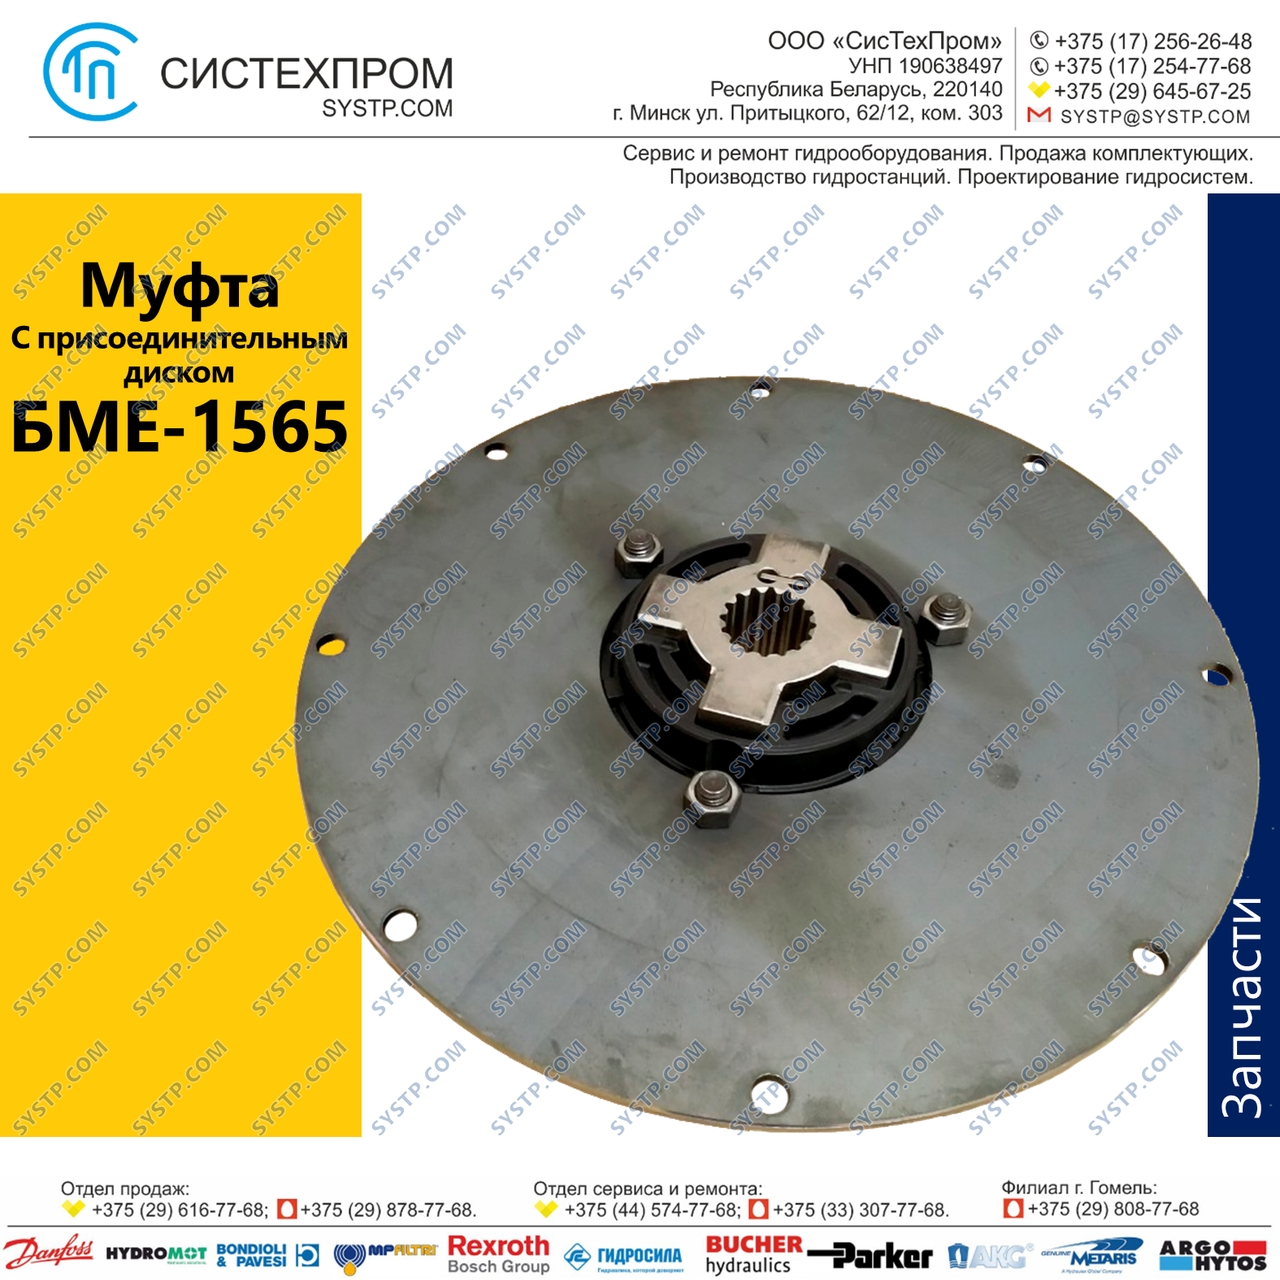 Муфта 014K-00100-SA11-00218314 (CF-K-100-165-11-65695) с присоединительным диском к маховику SAE 11.5